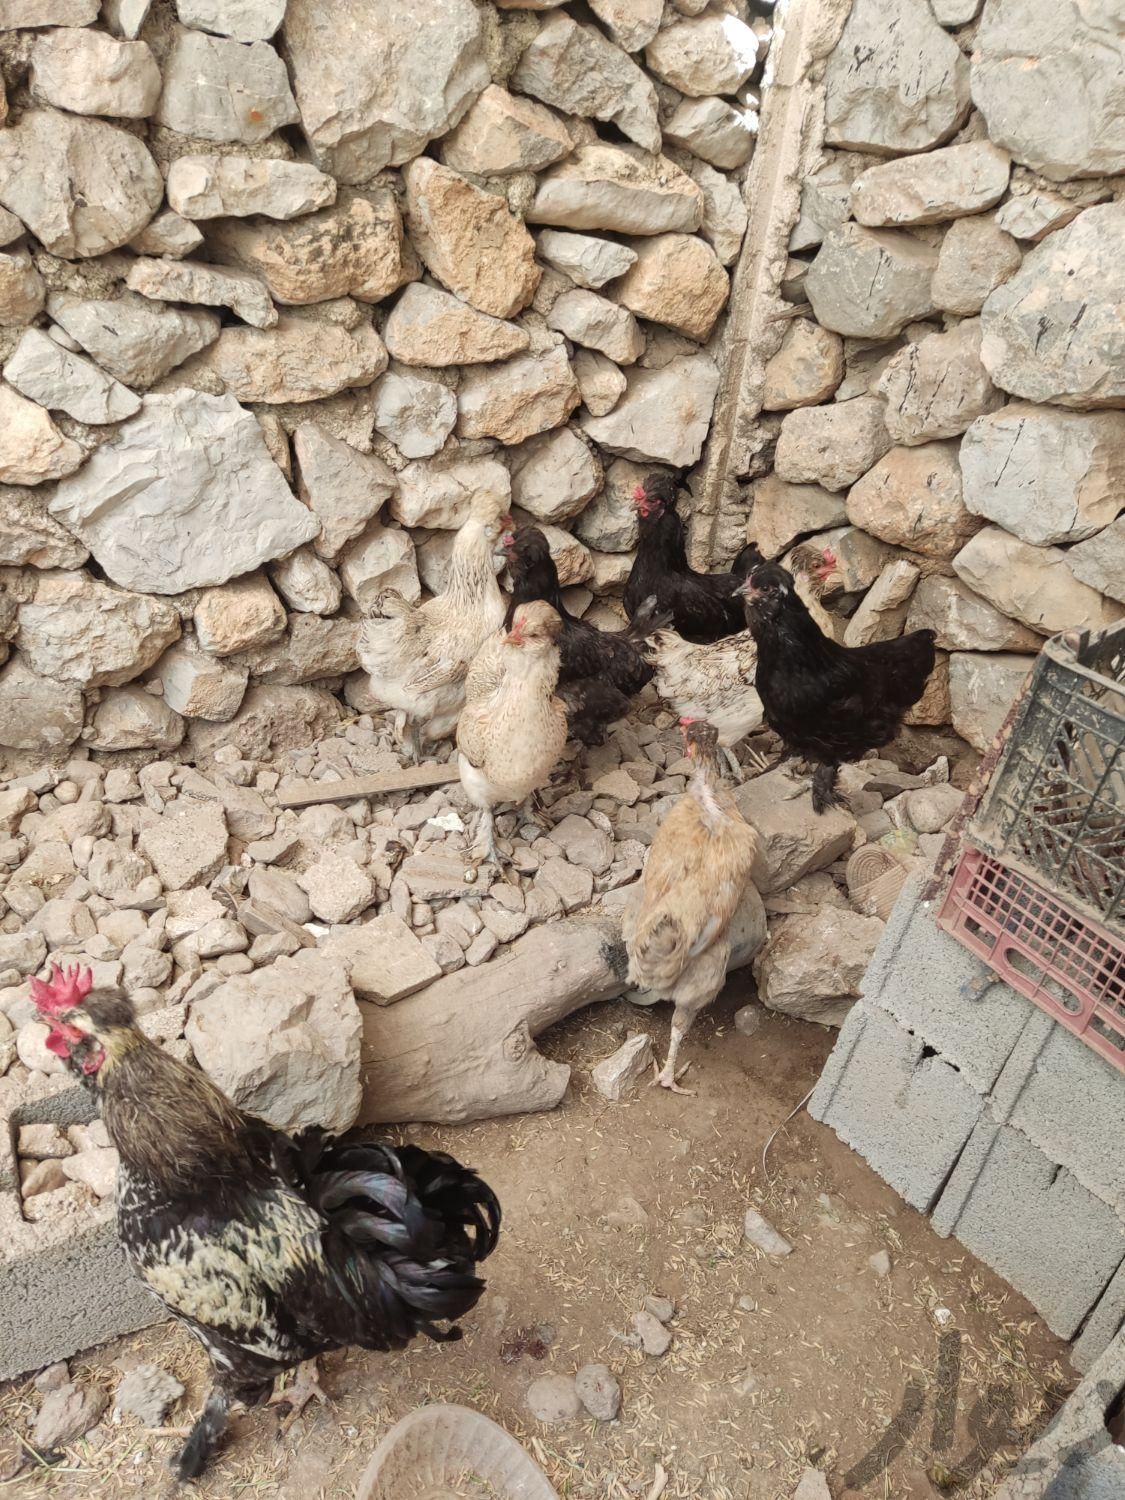 مرغ محلی اصیل نژاد دار دونی 500تومن|حیوانات مزرعه|نورآباد ممسنی, |دیوار